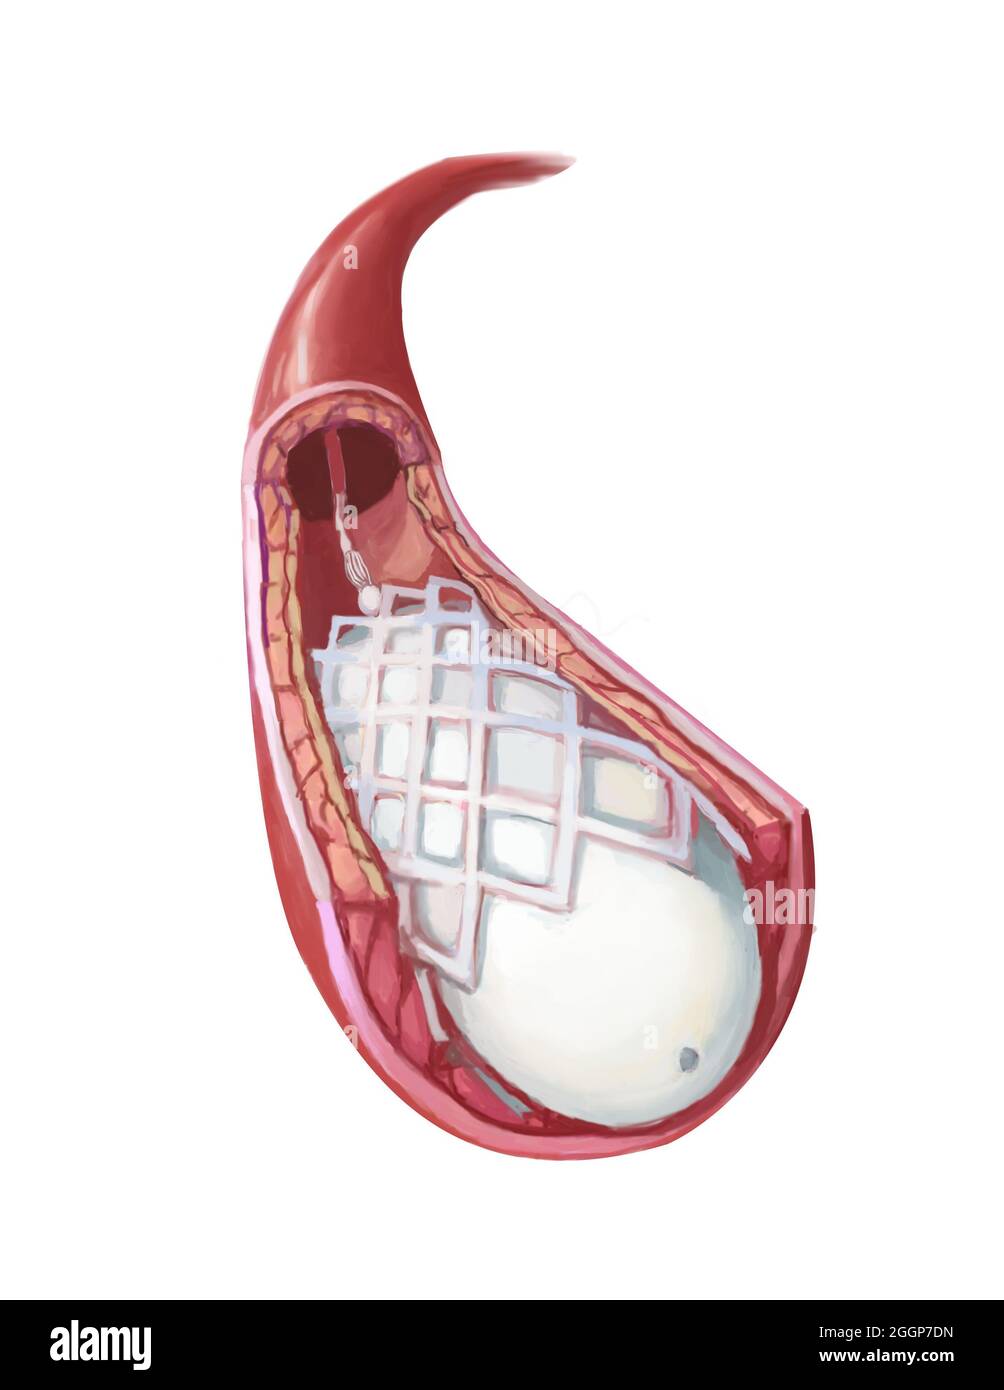 Illustration médicale montrant l'angioplastie par ballonnet et l'insertion d'un stent. Banque D'Images